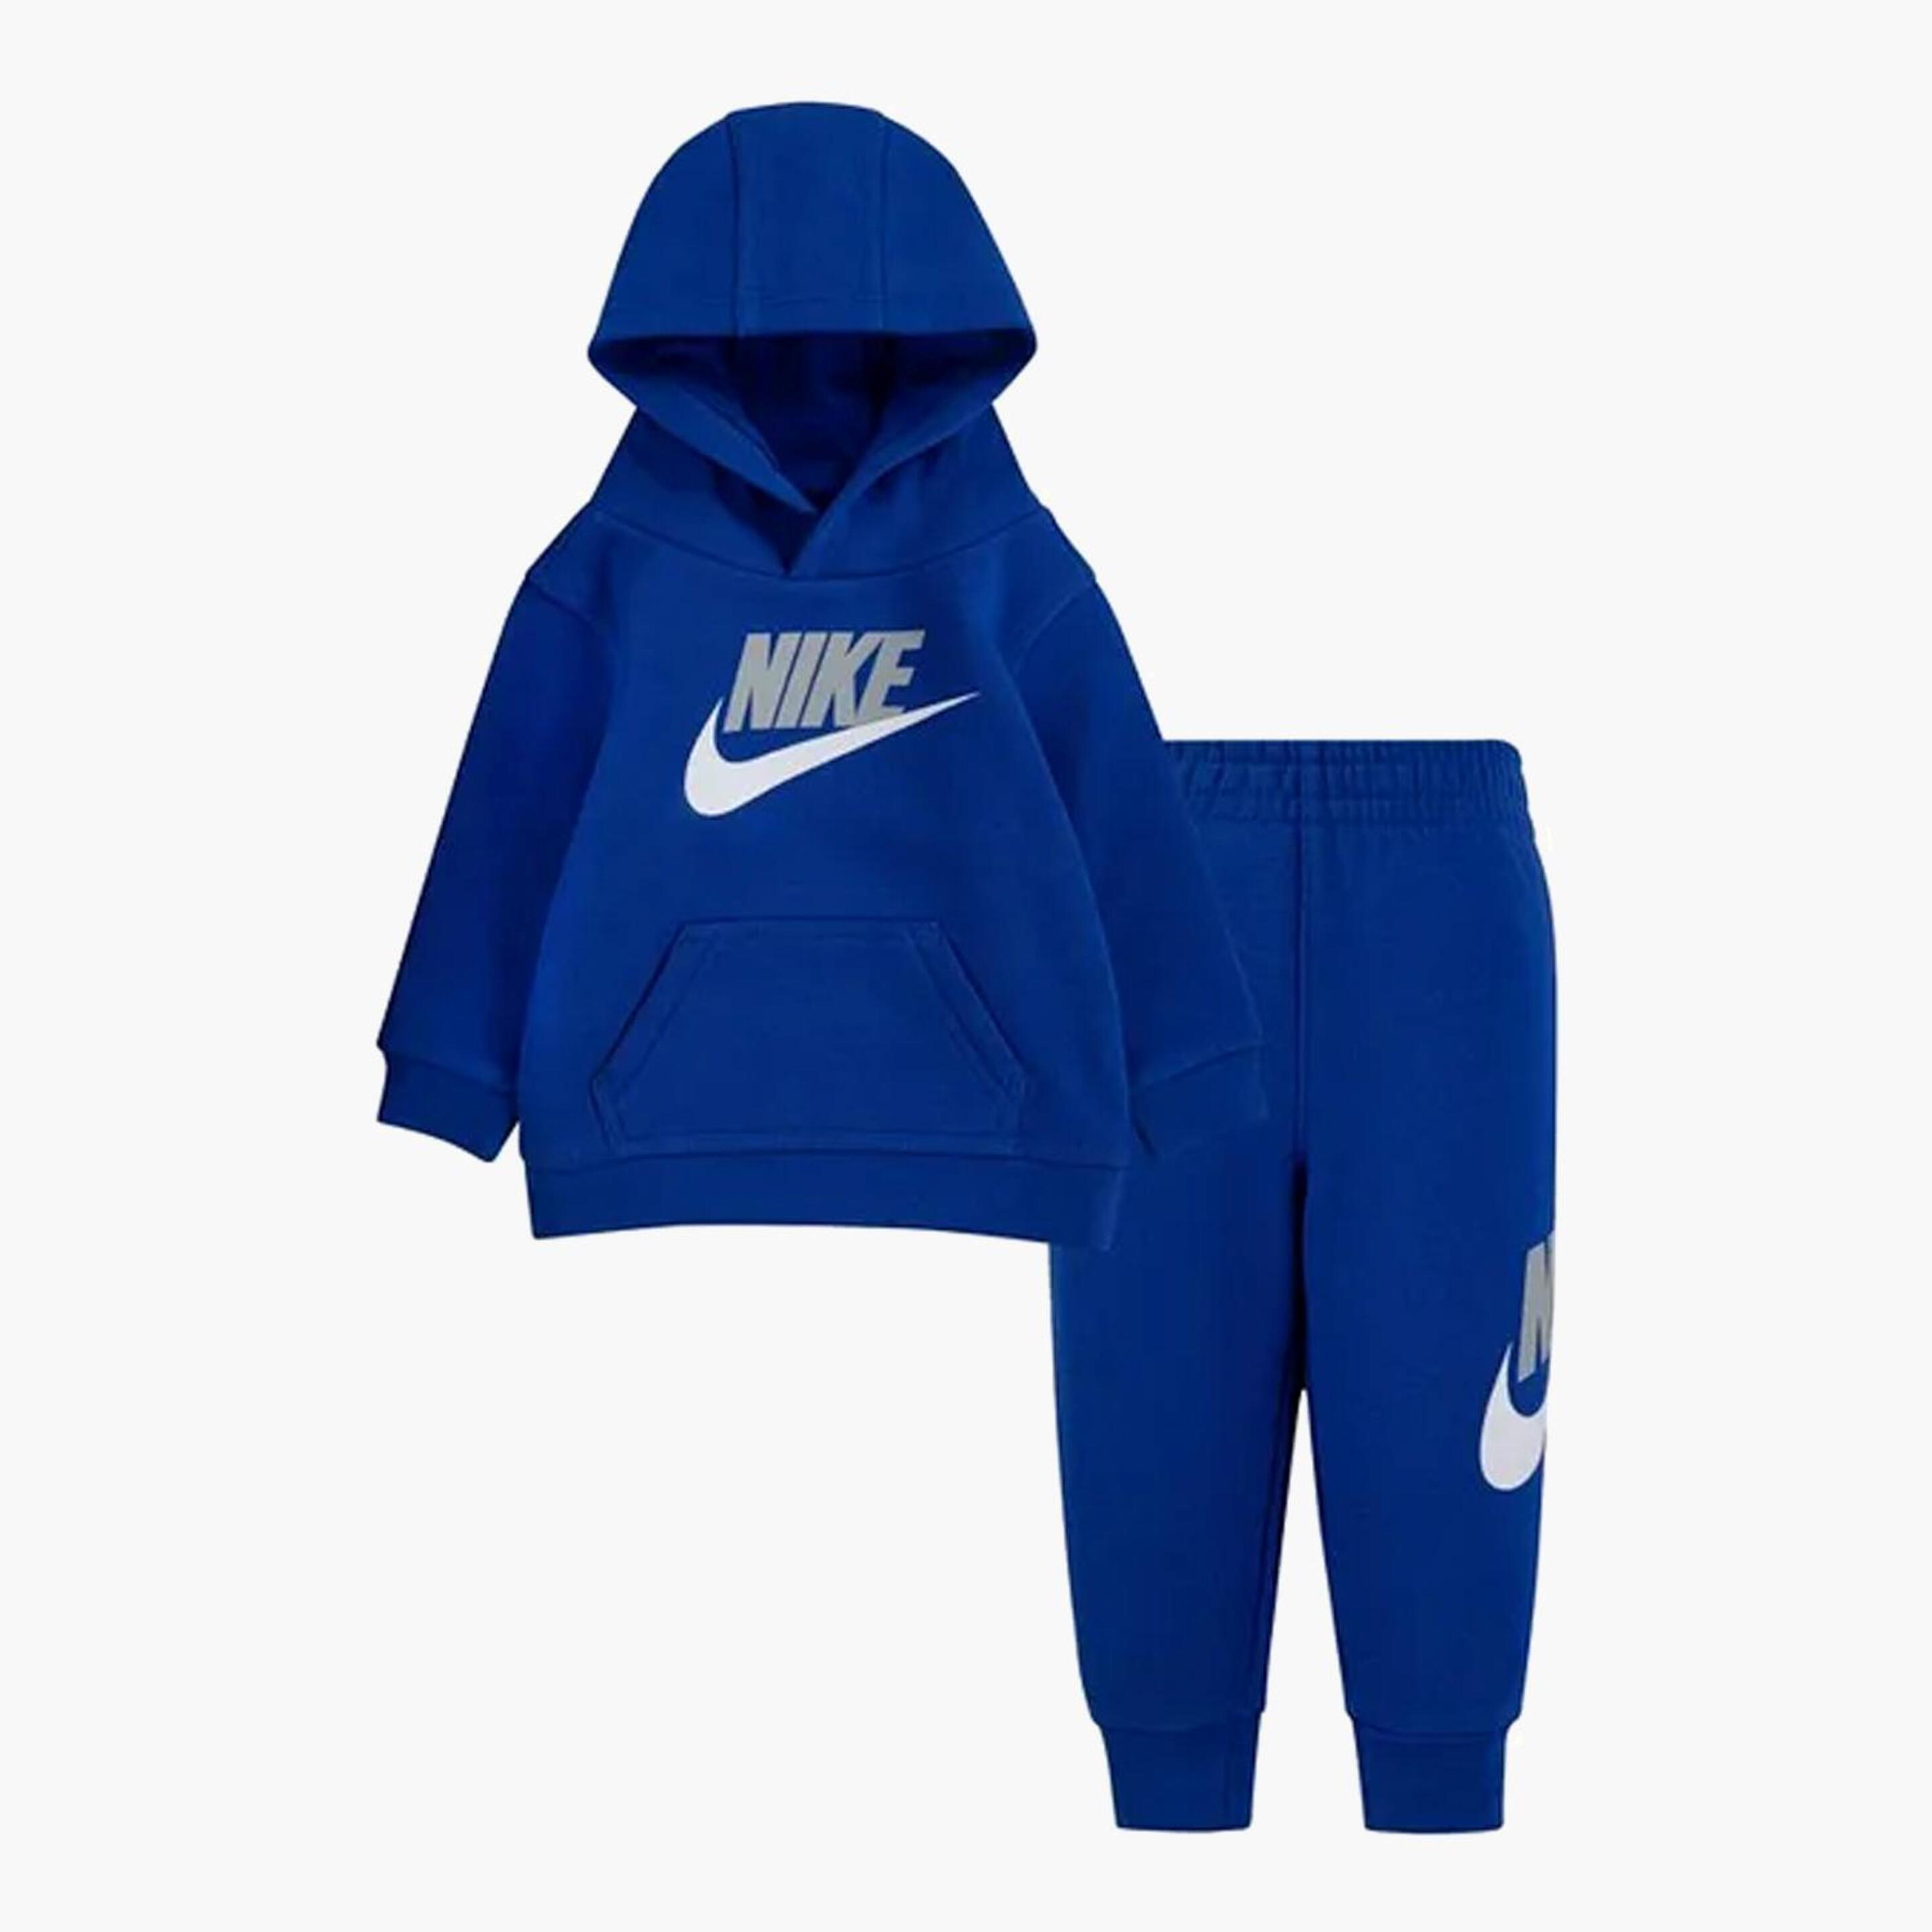 Chándal Nike - azul - Chándal Bebé